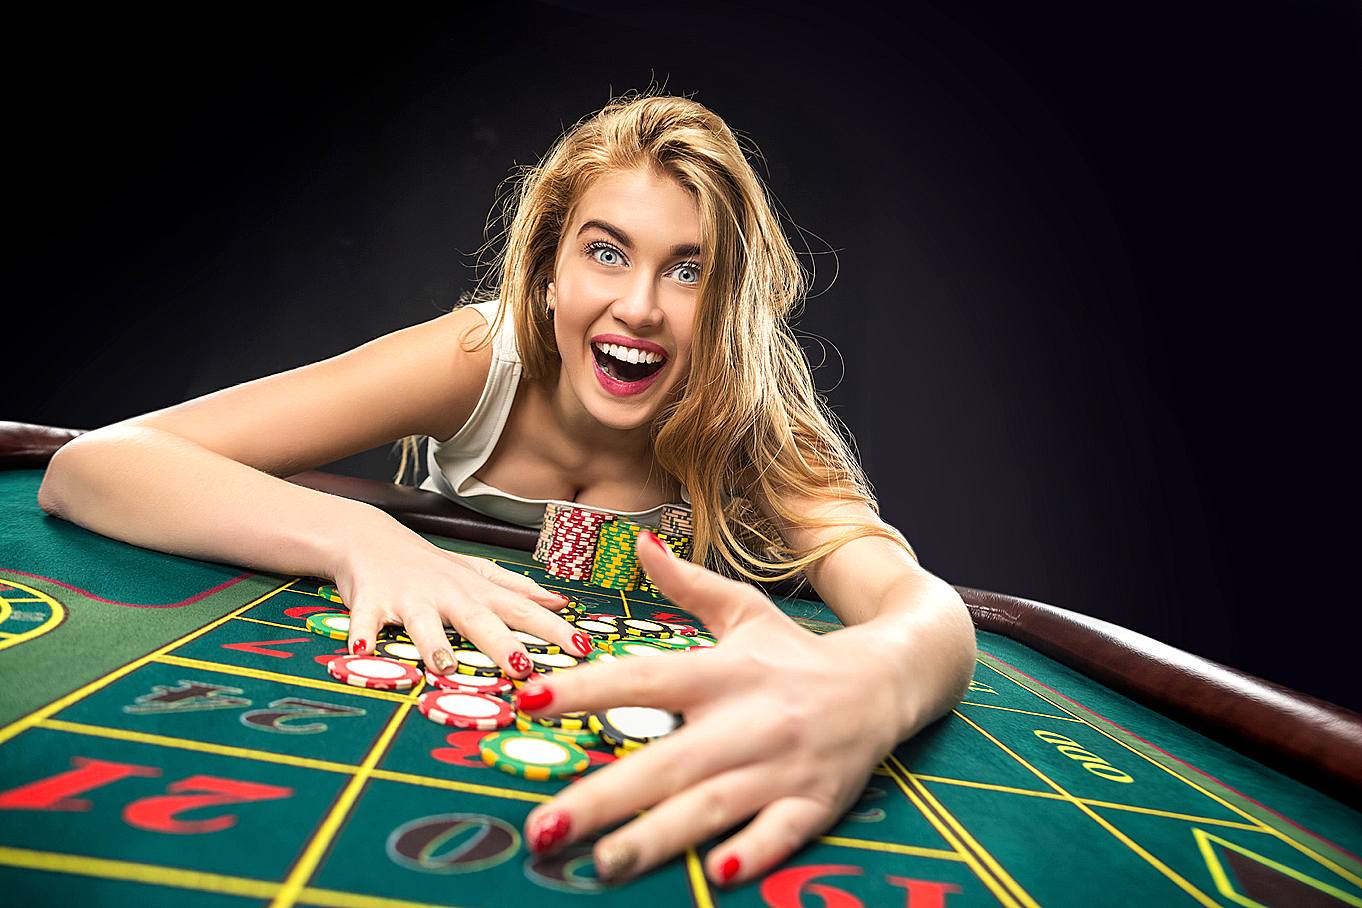 Free casino poker games игровые автоматы с кредитом 50000 и большими бонусами бесплатно